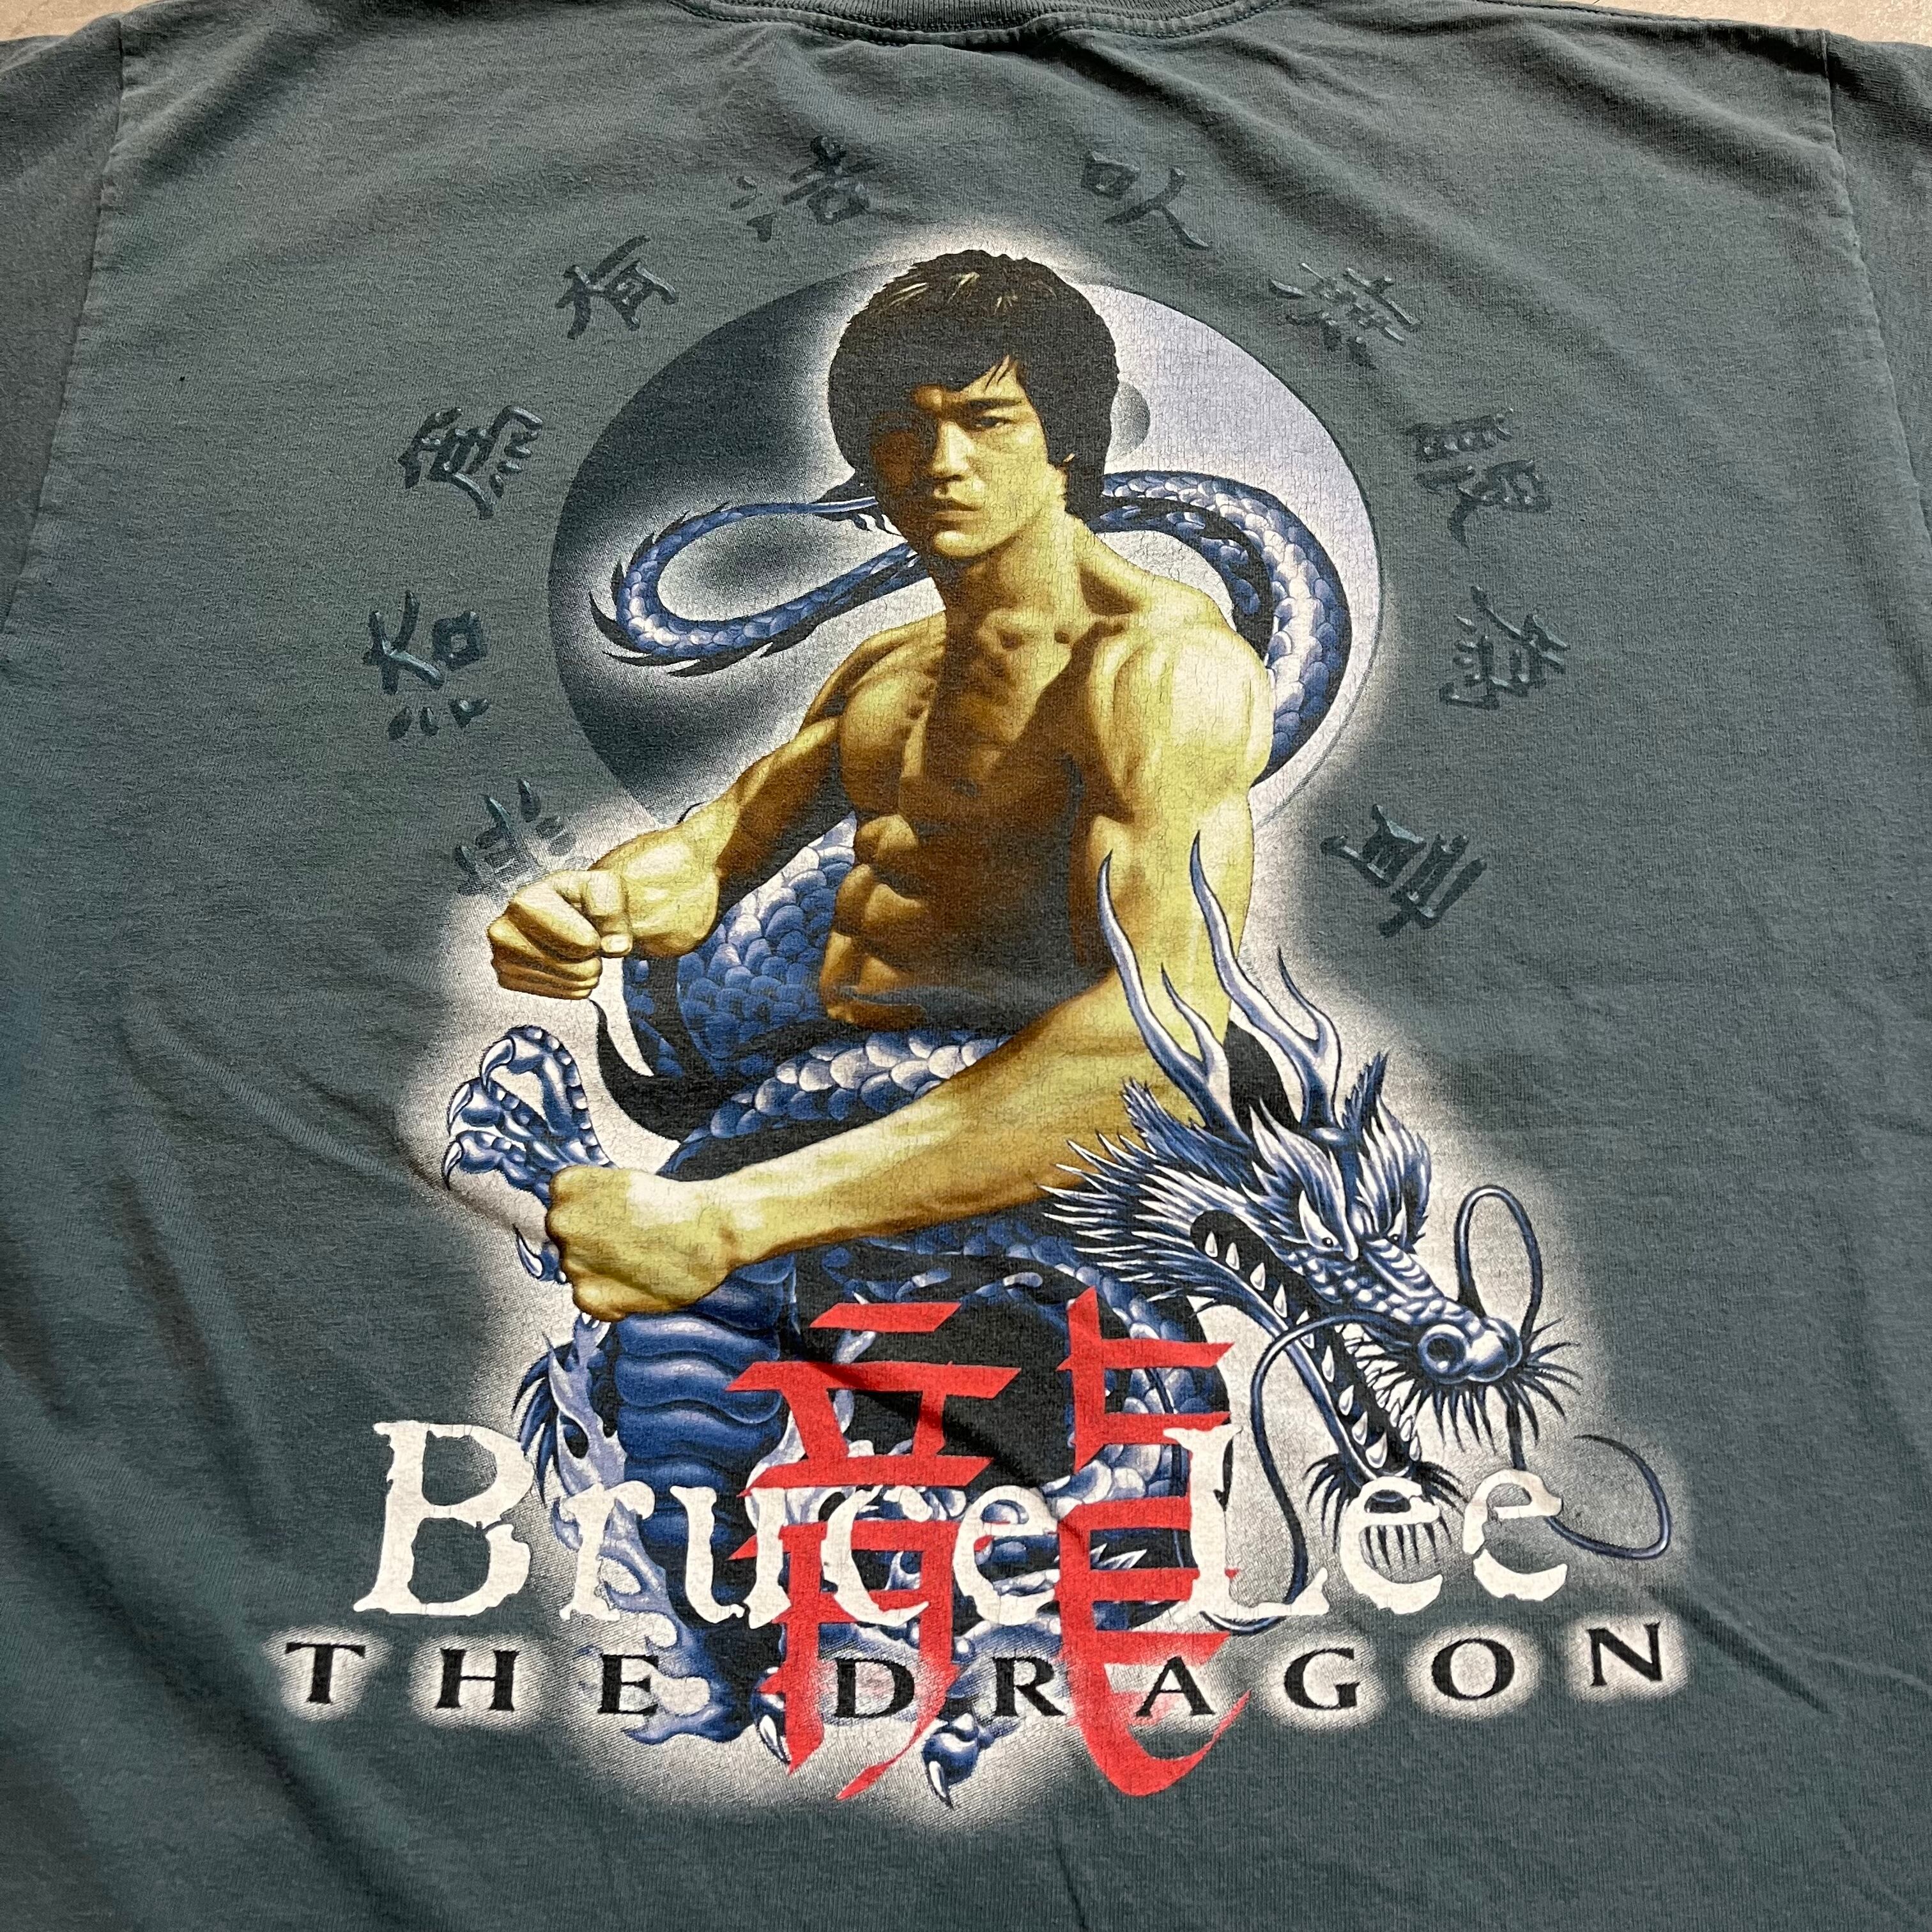 ブルースリー BRUCE LEE プリントTシャツ メンズS /eaa328330